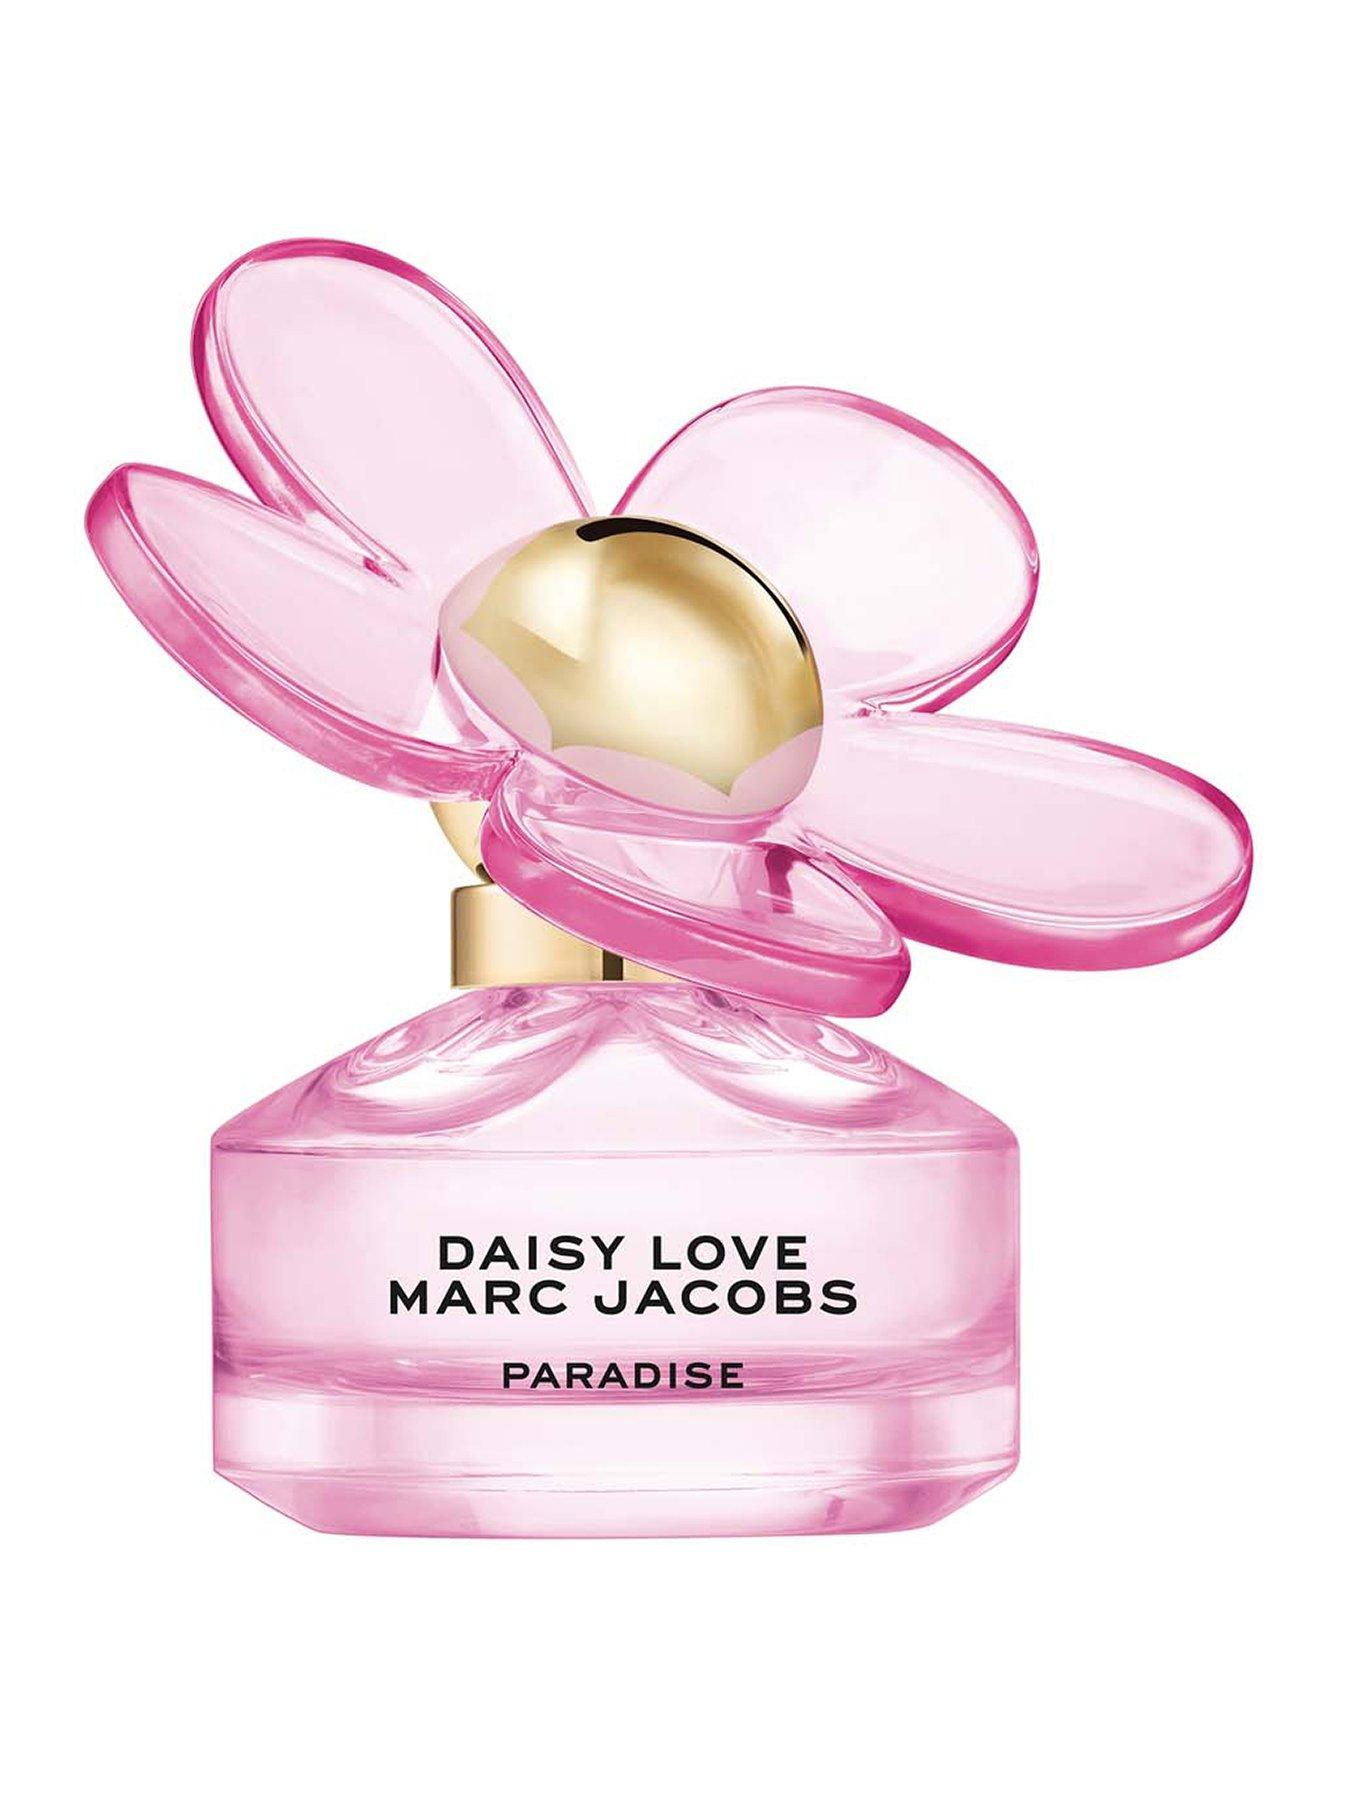 Daisy Love Marc Jacobs Skies Limited Edition Eau de Toilette 50ml